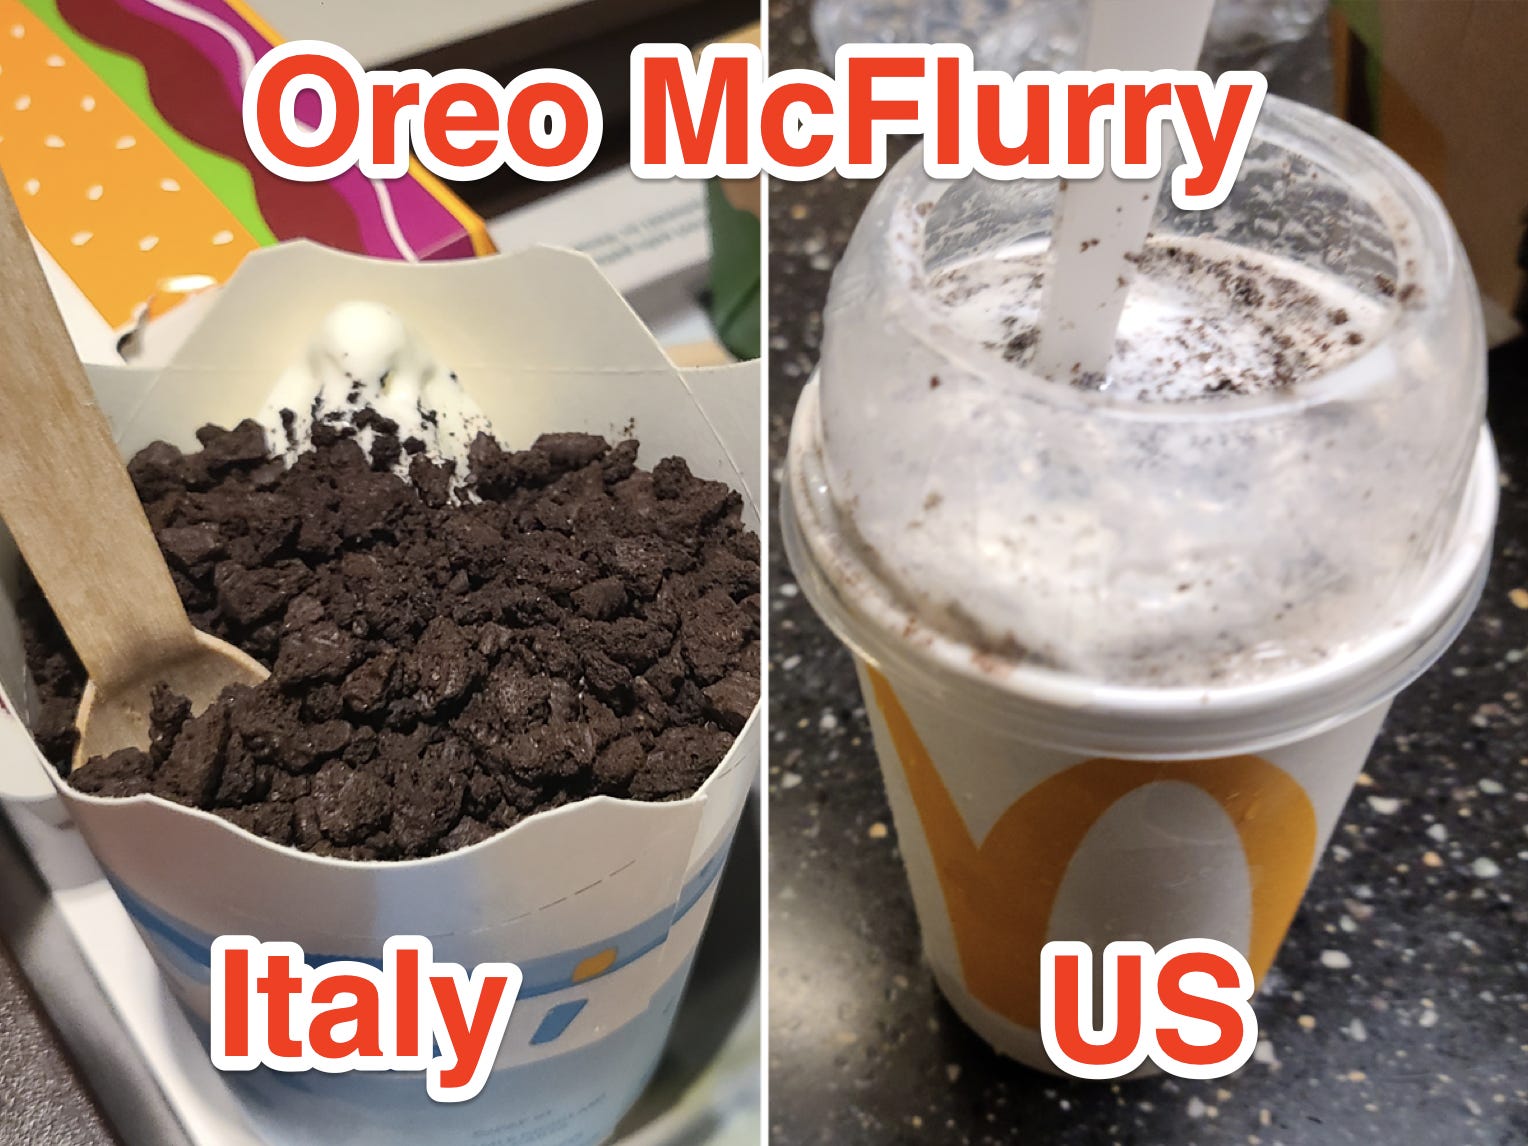 oreo mcflurry von einem italienischen mcdonalds und ein oreo mcflurry von einem amerikanischen mcdonalds